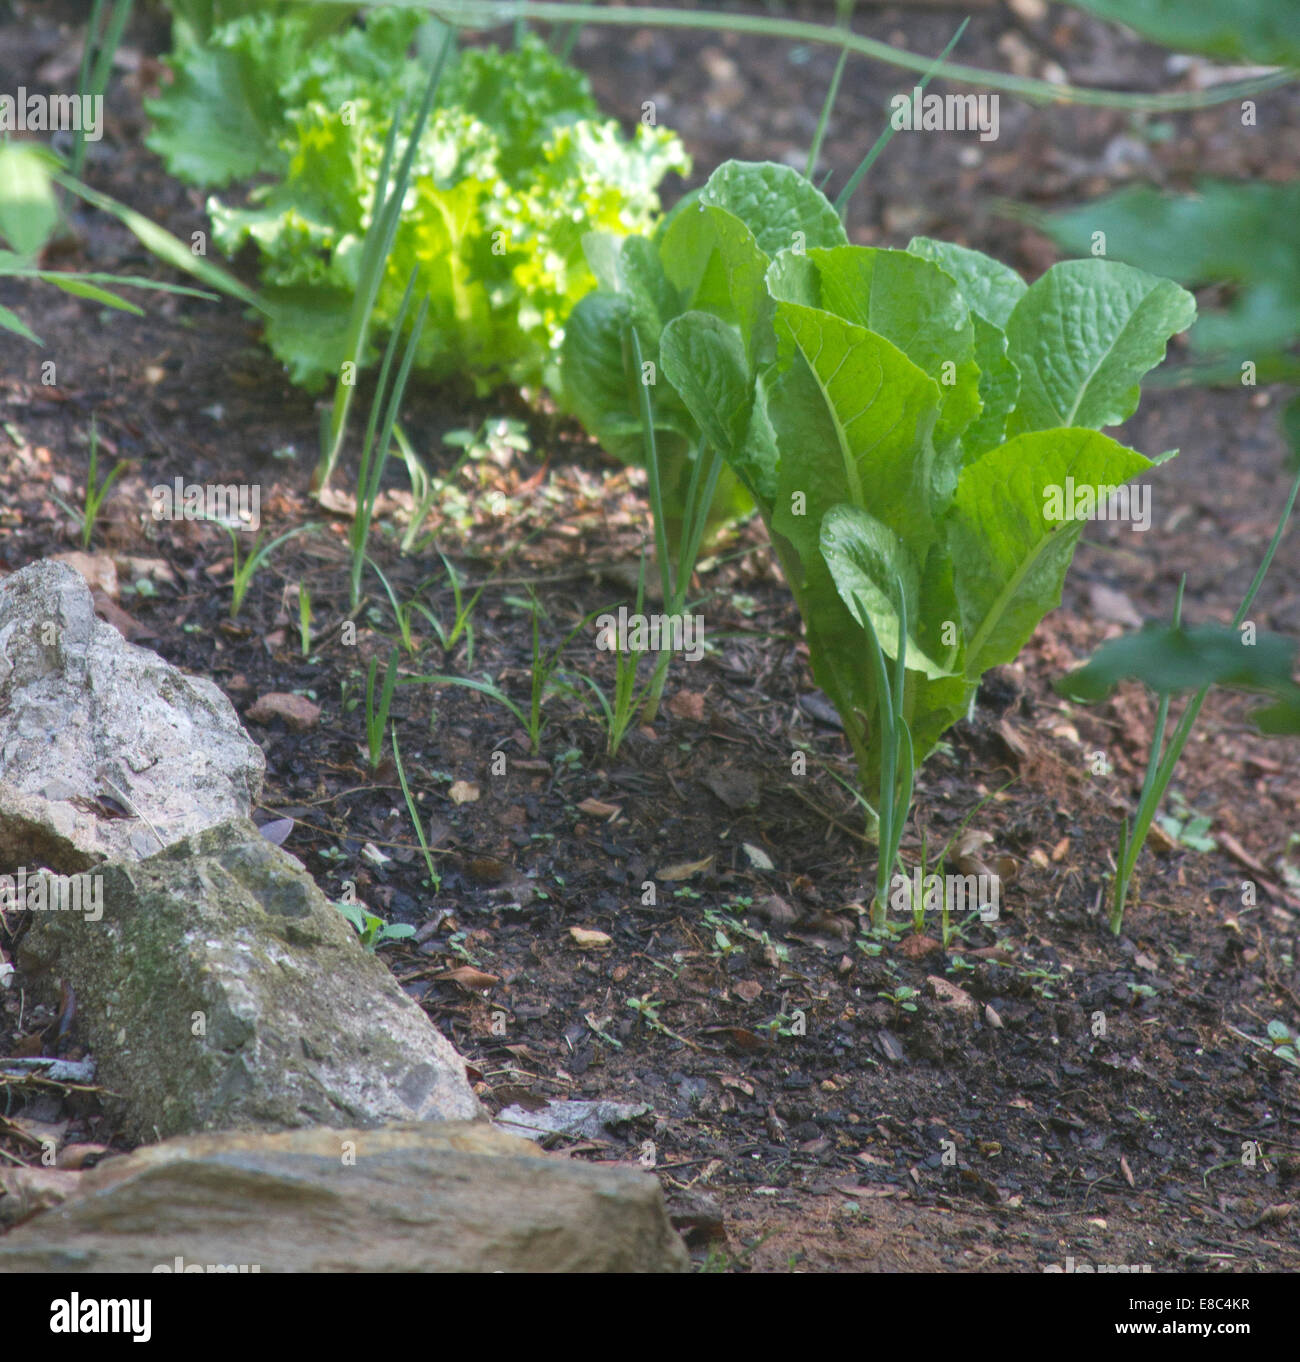 Compagno organici giardinaggio crescente lattuga romana accanto alle cipolle per incoraggiare la crescita e a scoraggiare i parassiti Foto Stock